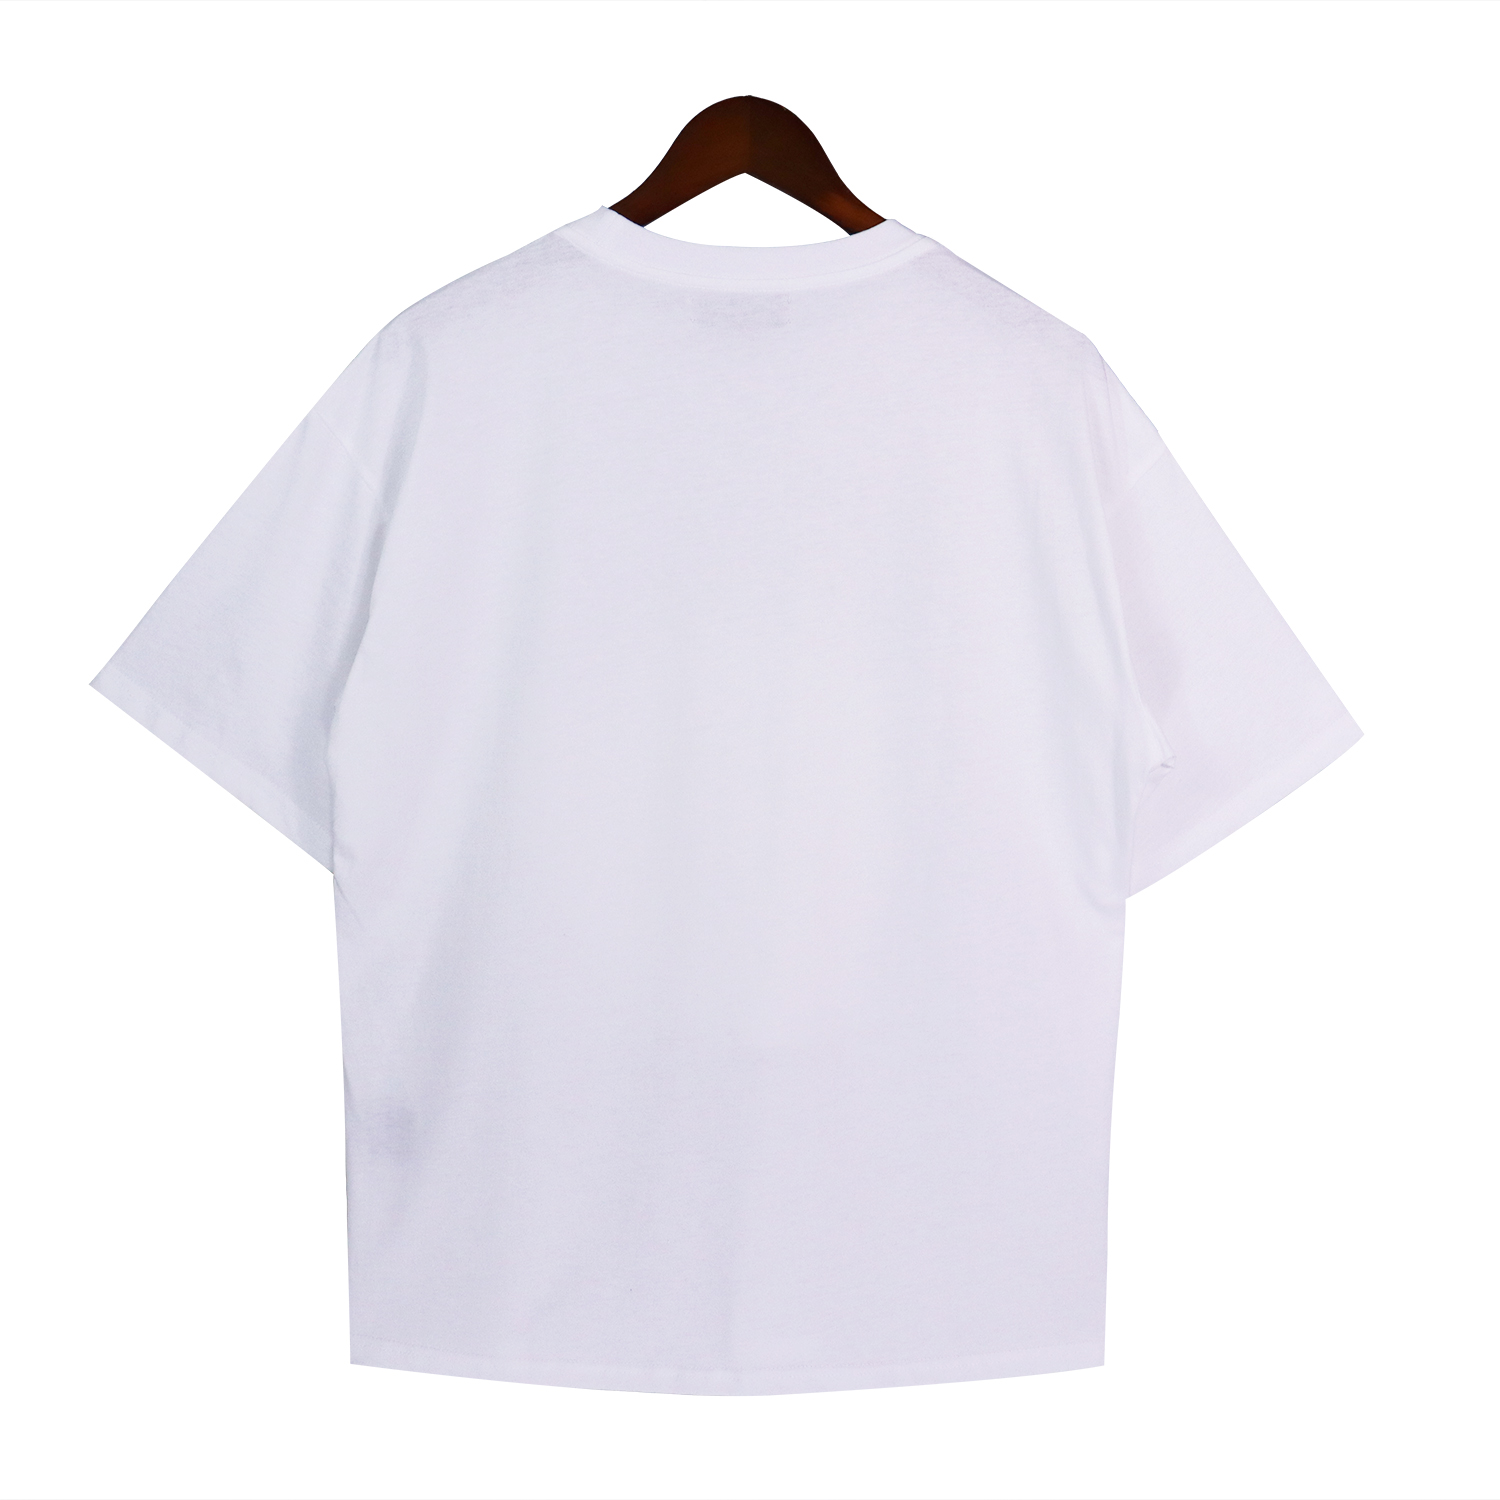 Nova camiseta masculina Camiseta masculina design camiseta masculina primavera verão para camisas masculinas pretas camisetas manga de férias letras casuais impressão tops Faixa de tamanho Tamanho S-XL